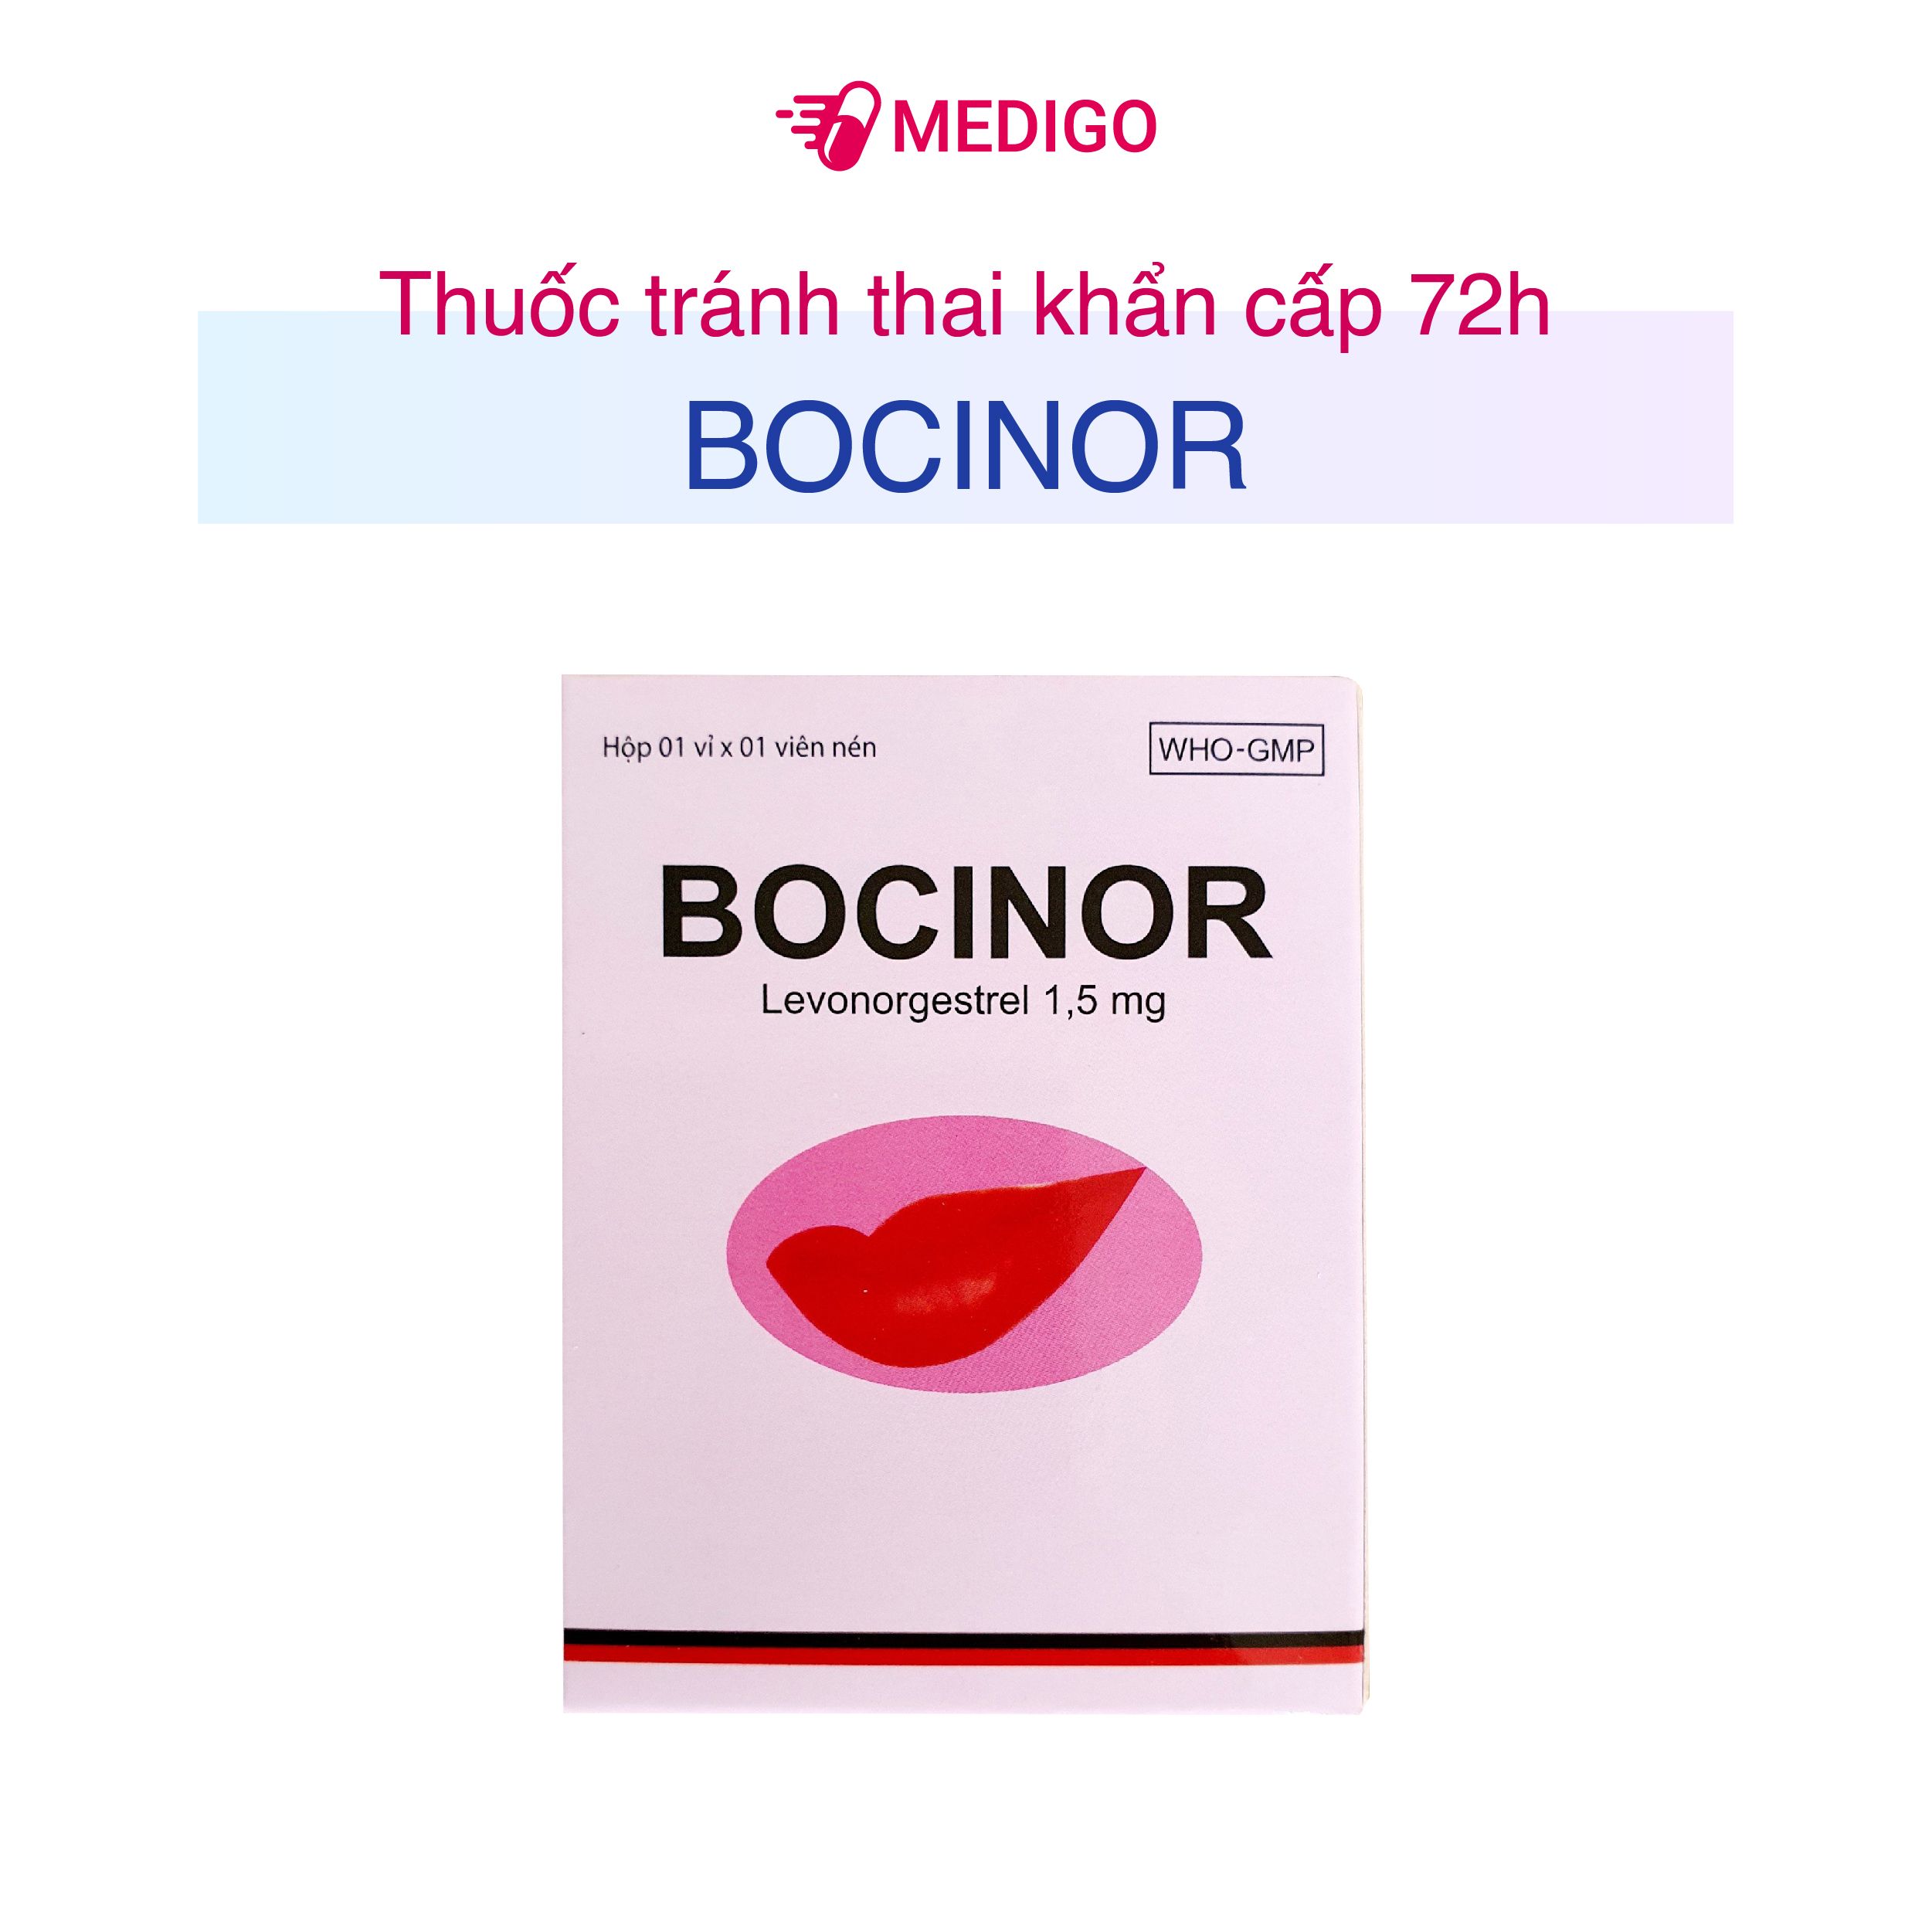 Giới thiệu về thuốc tránh thai khẩn cấp Bocinor